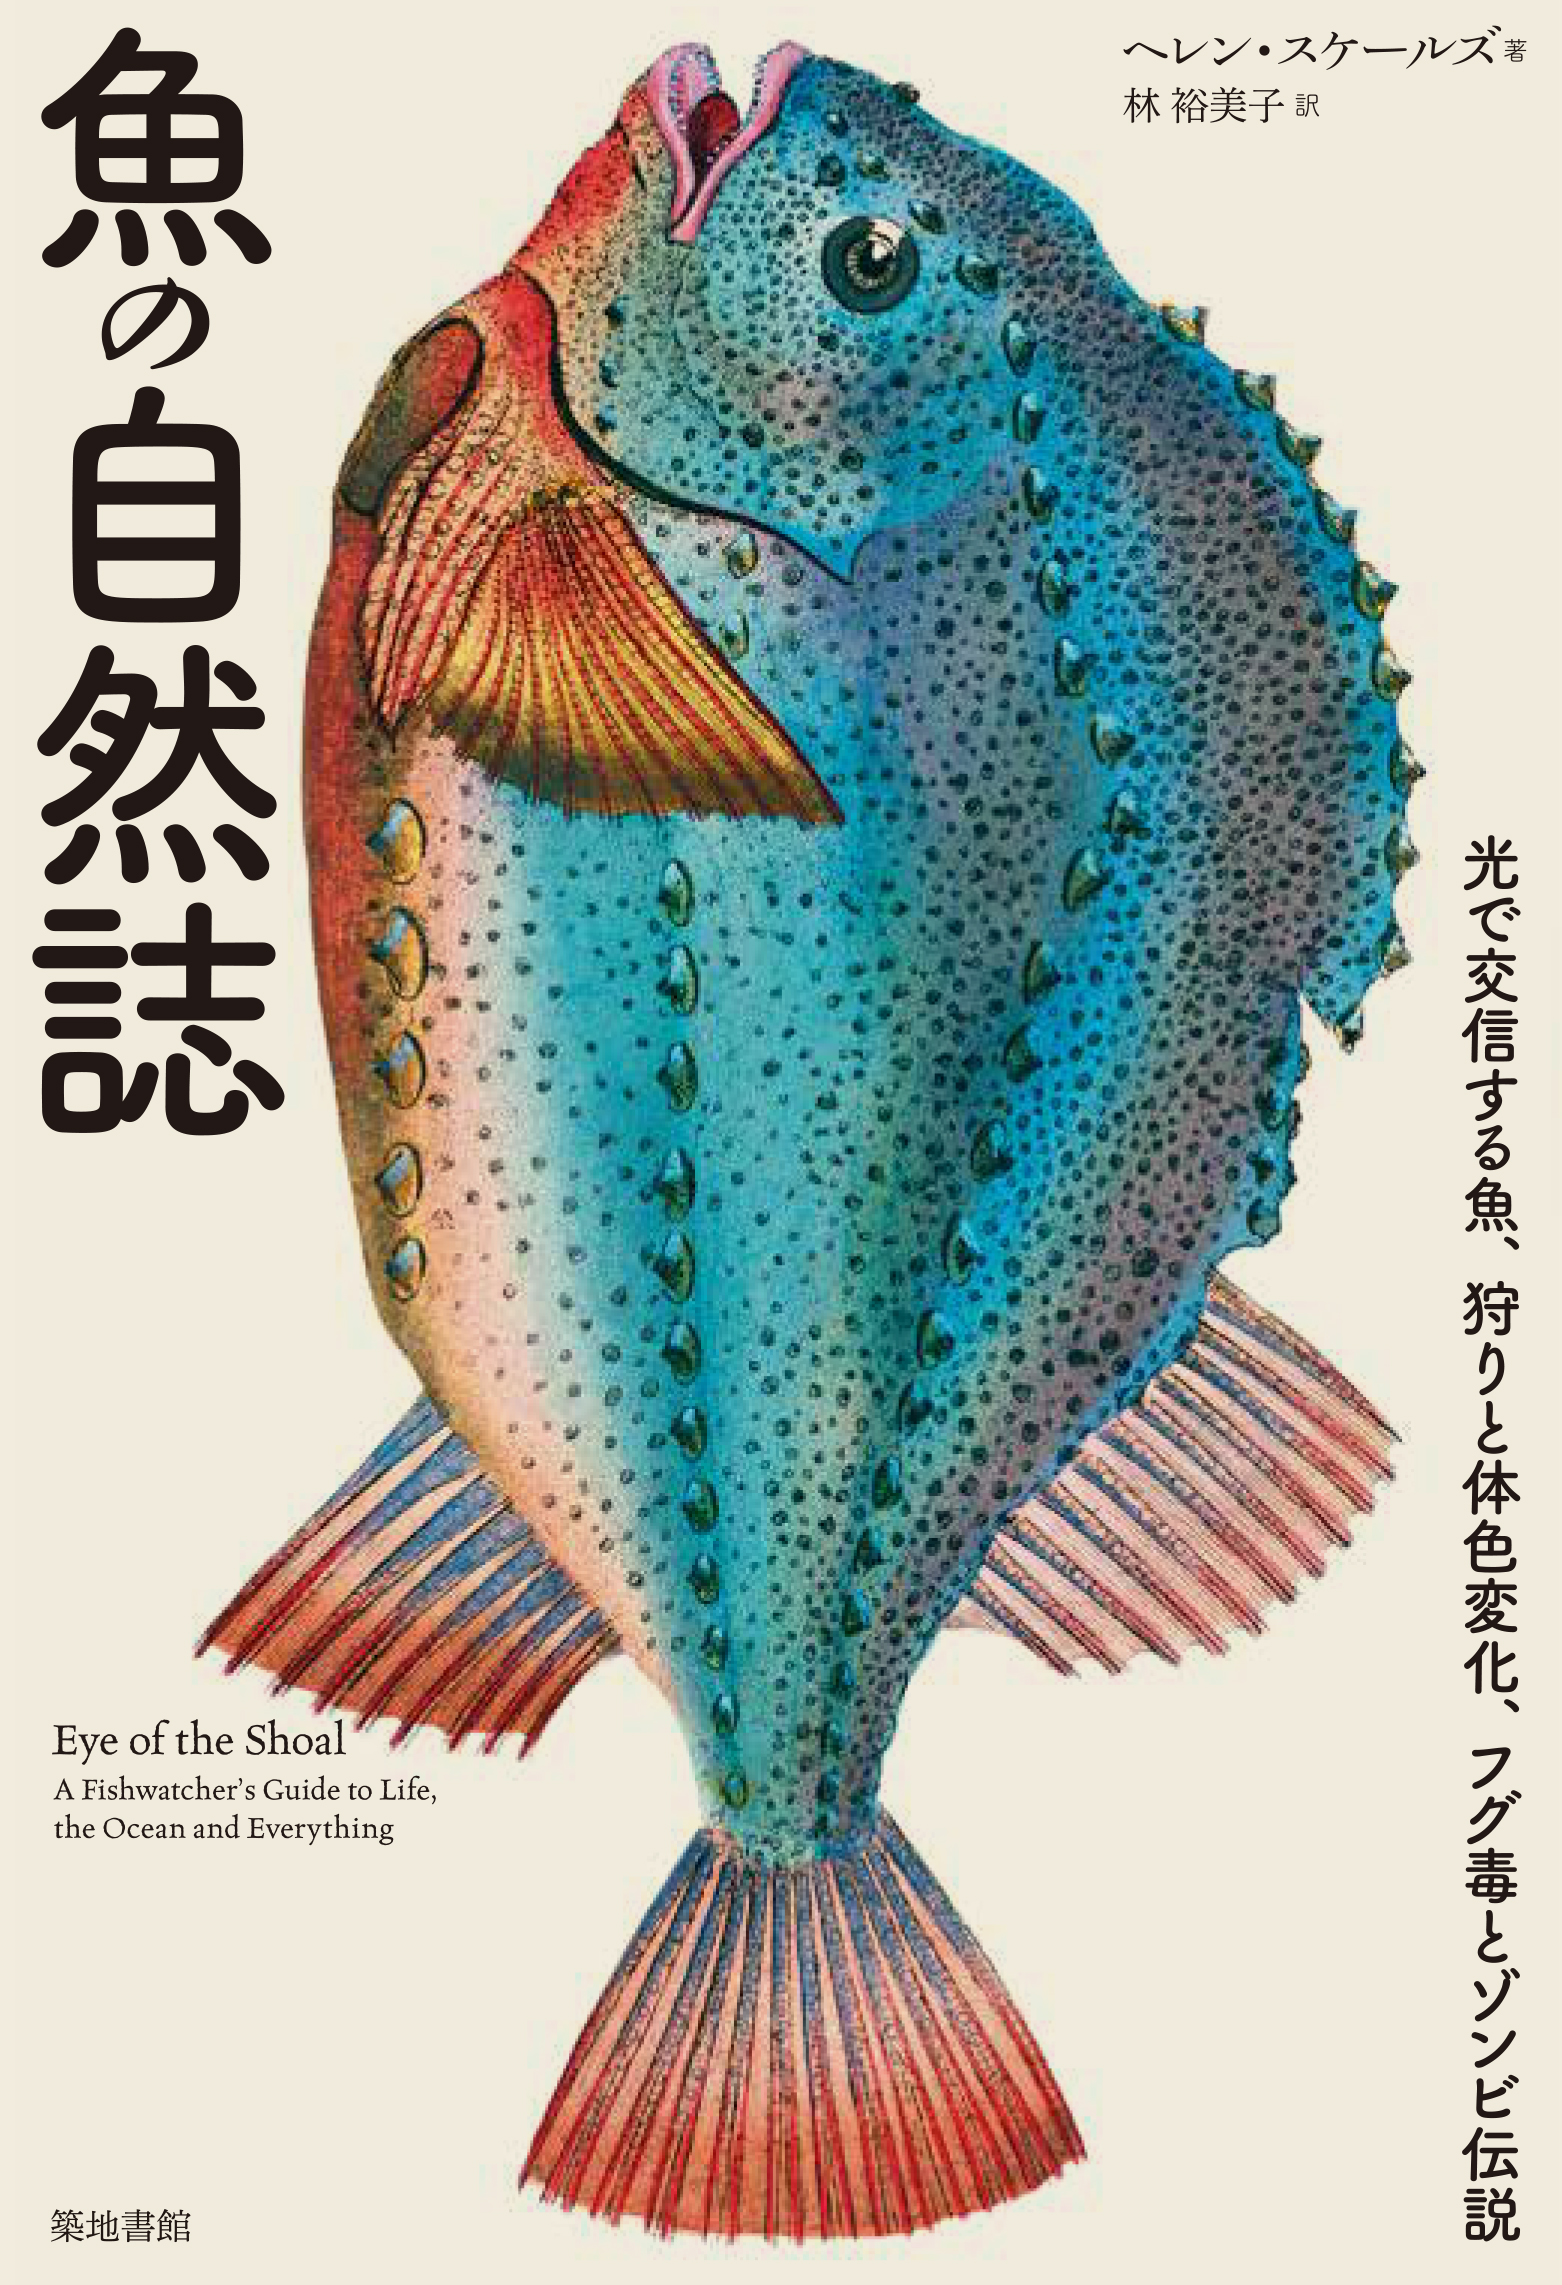 魚の自然誌の商品画像